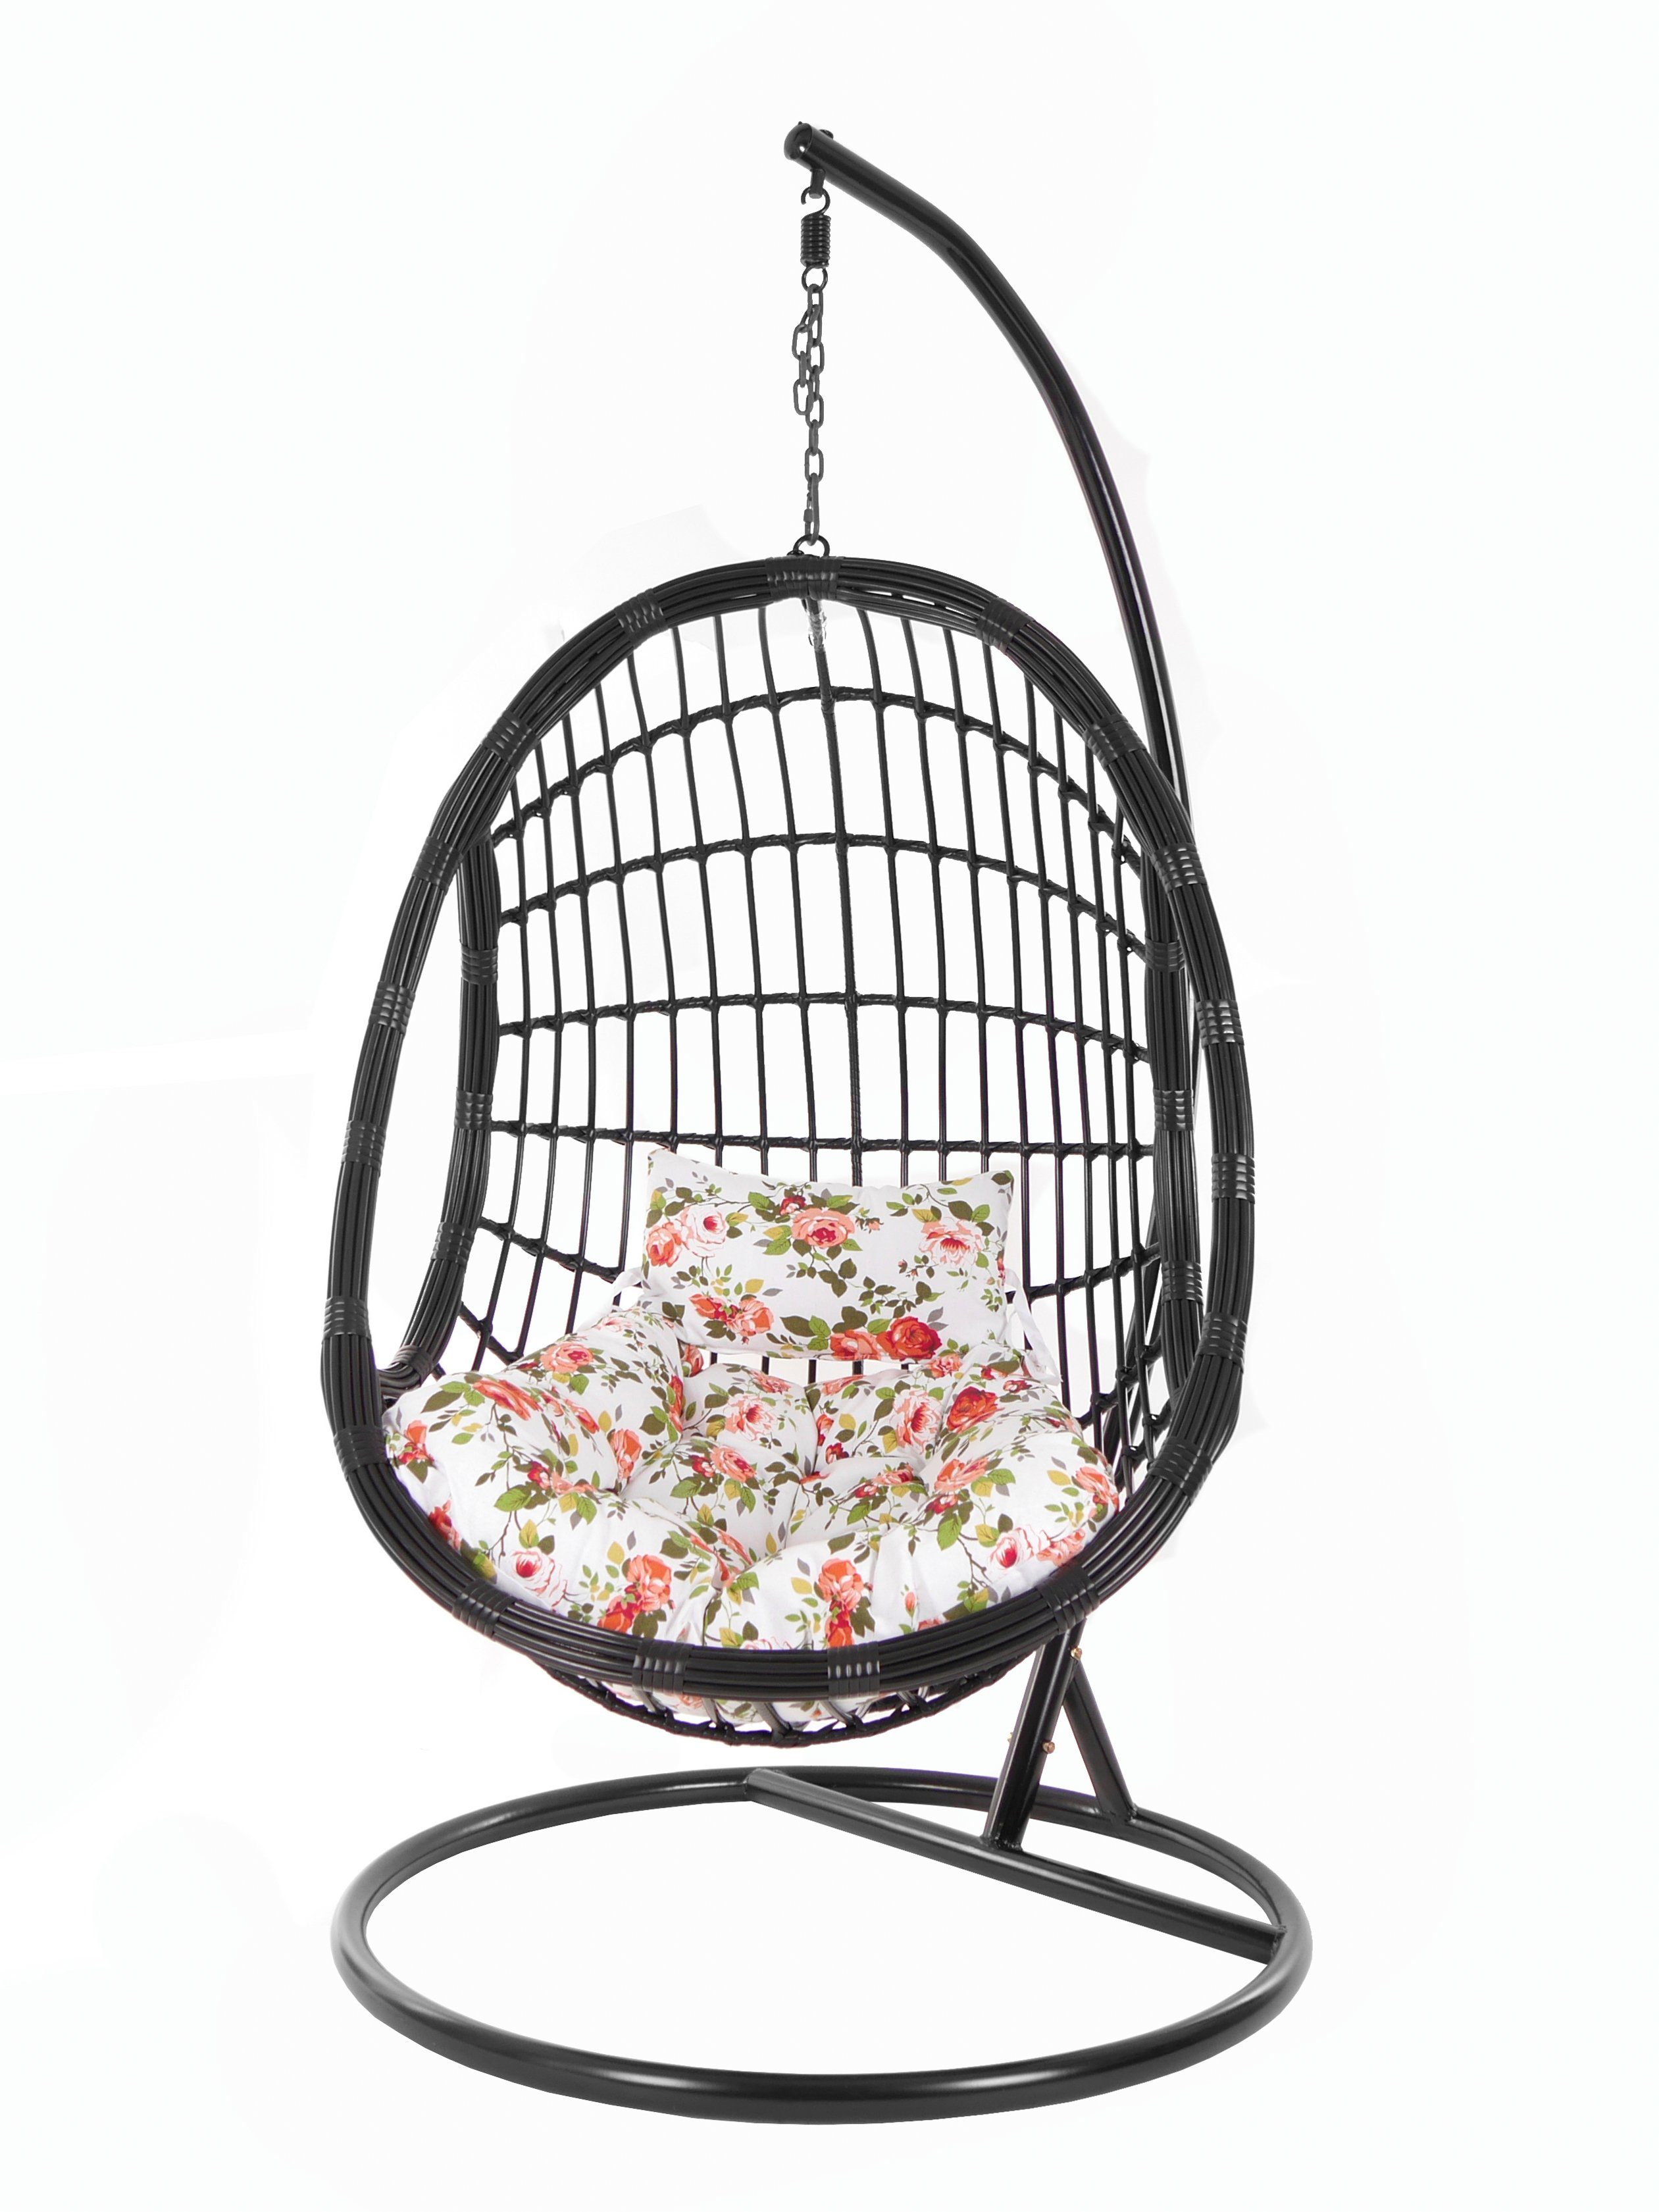 KIDEO Hängesessel PALMANOVA black, Swing (3761 Kissen, Design Chair, Loungemöbel, schwarz, rosen edles roses) Schwebesessel, mit Gestell und Hängesessel